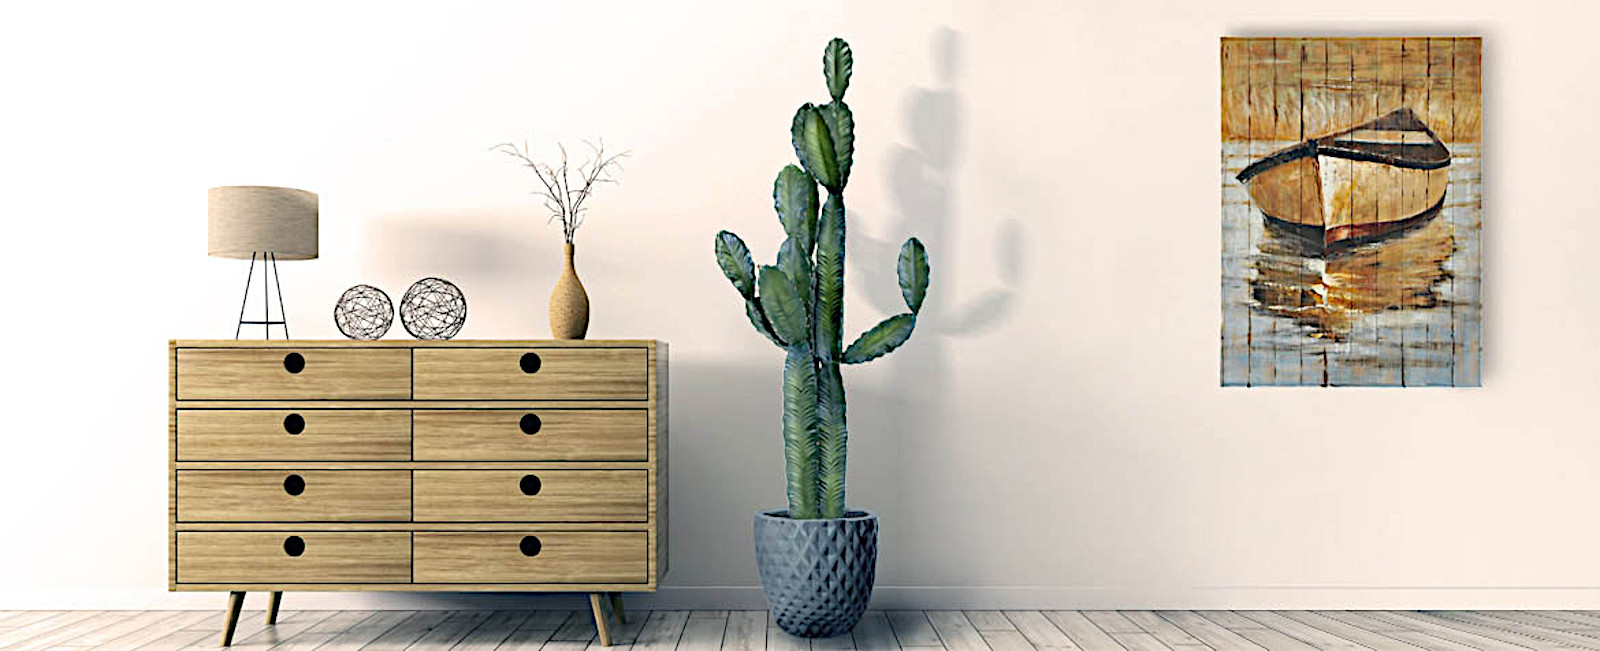 Reduced Price artificial cactus